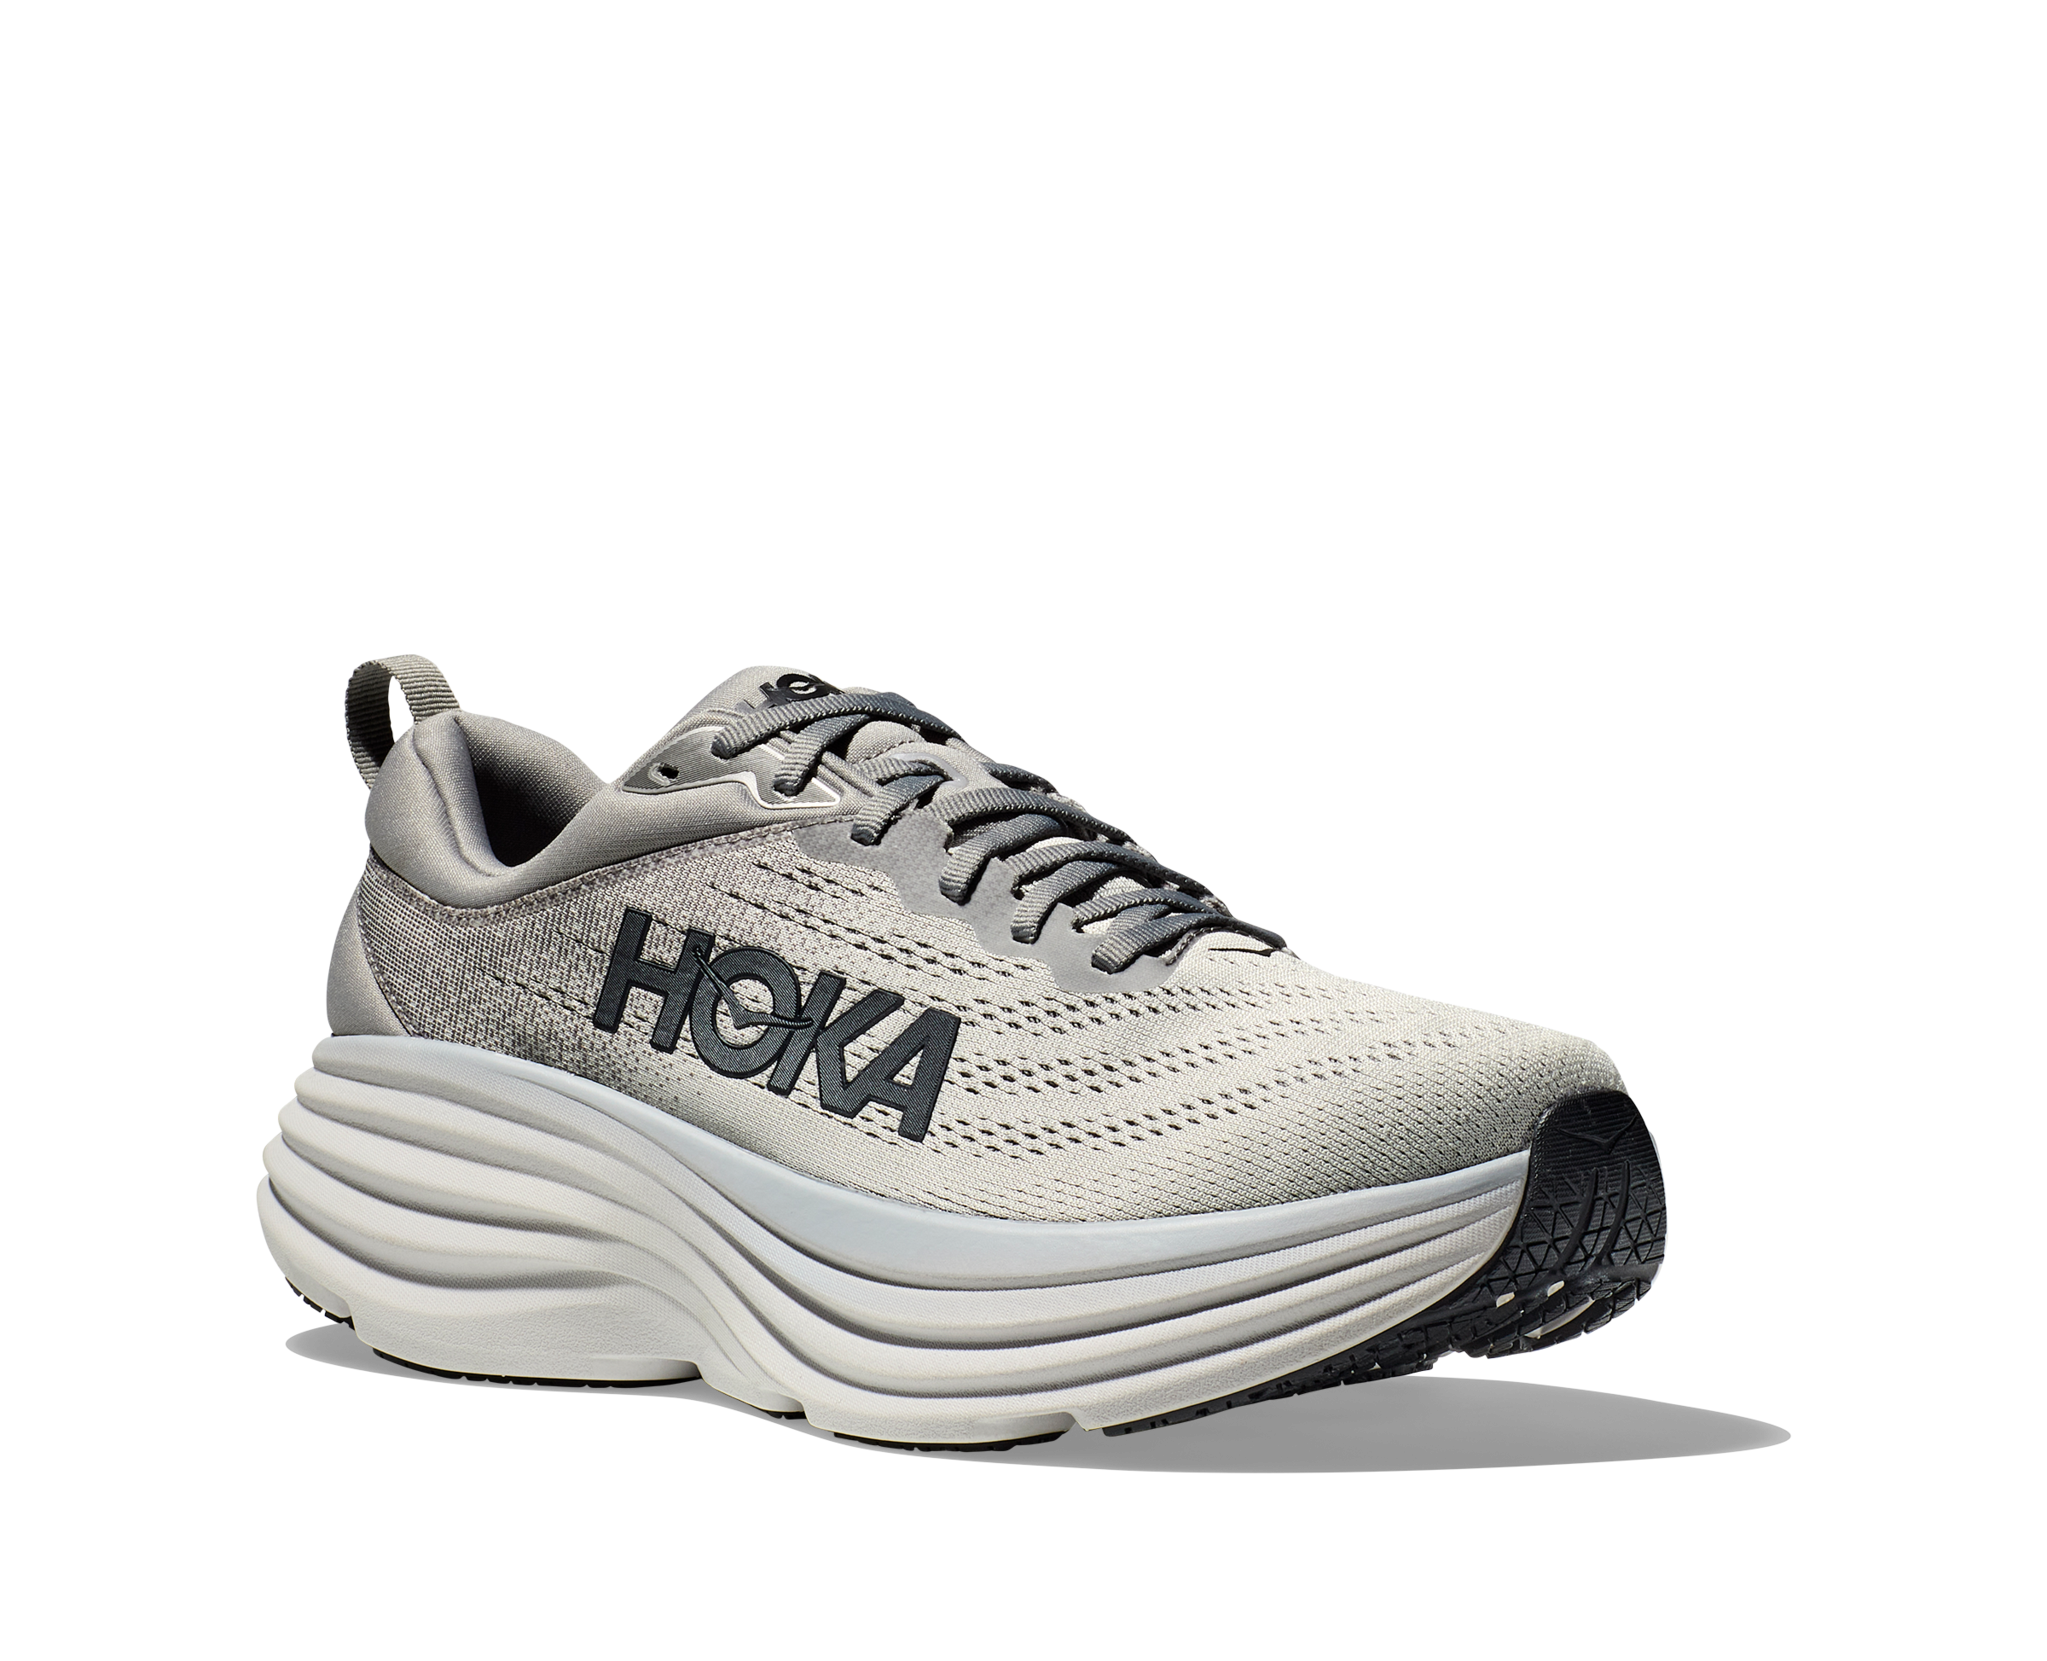 Men's Bondi 8 Running Shoe, Running Shoes For Men